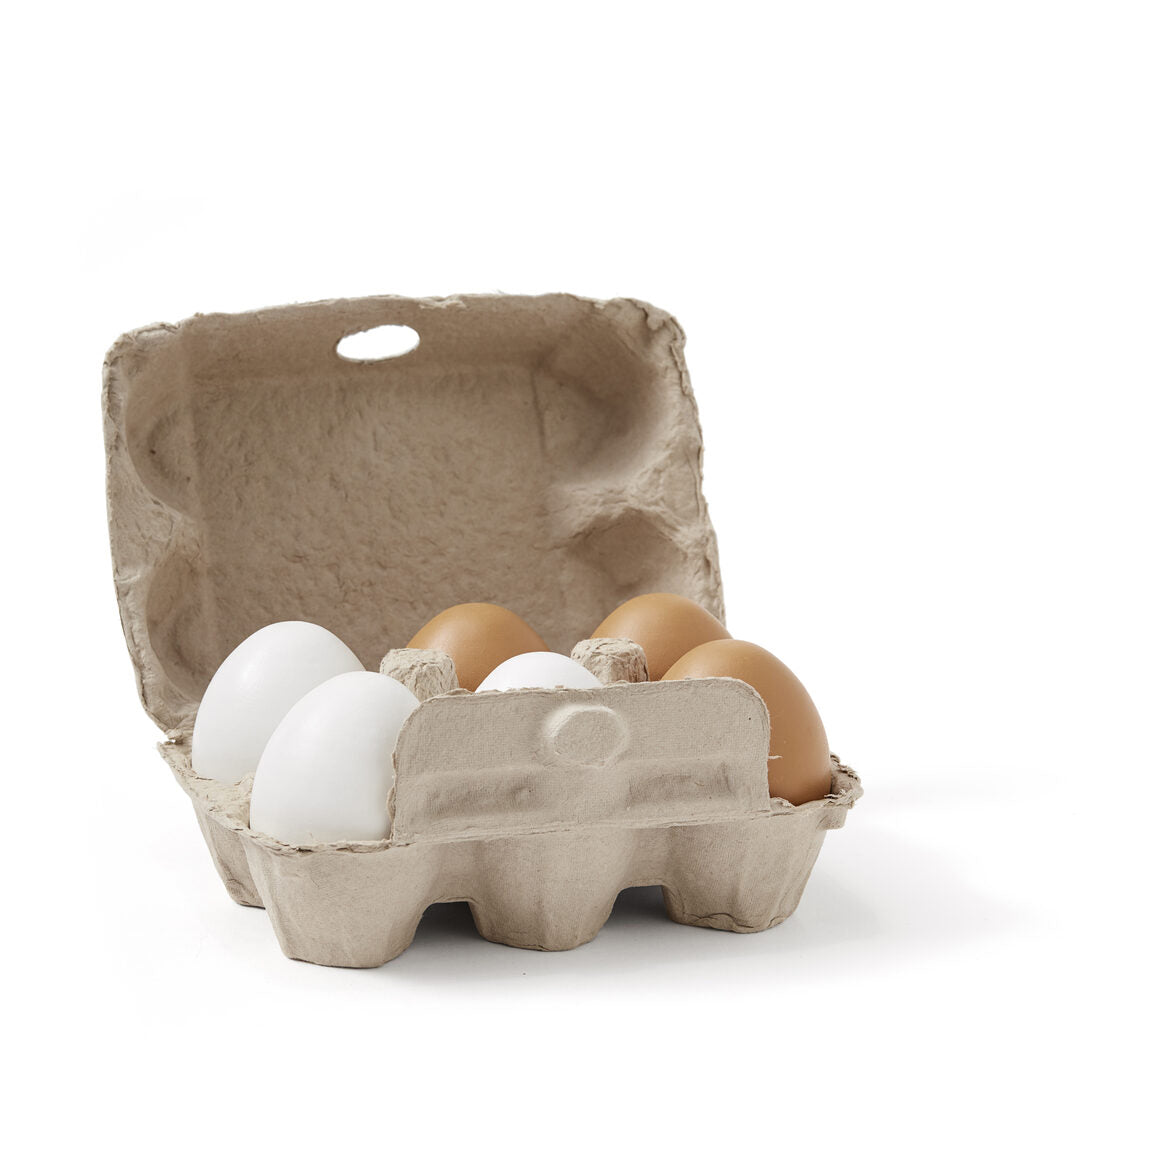 Kids concept Bistro 6 eggs in a paper carton